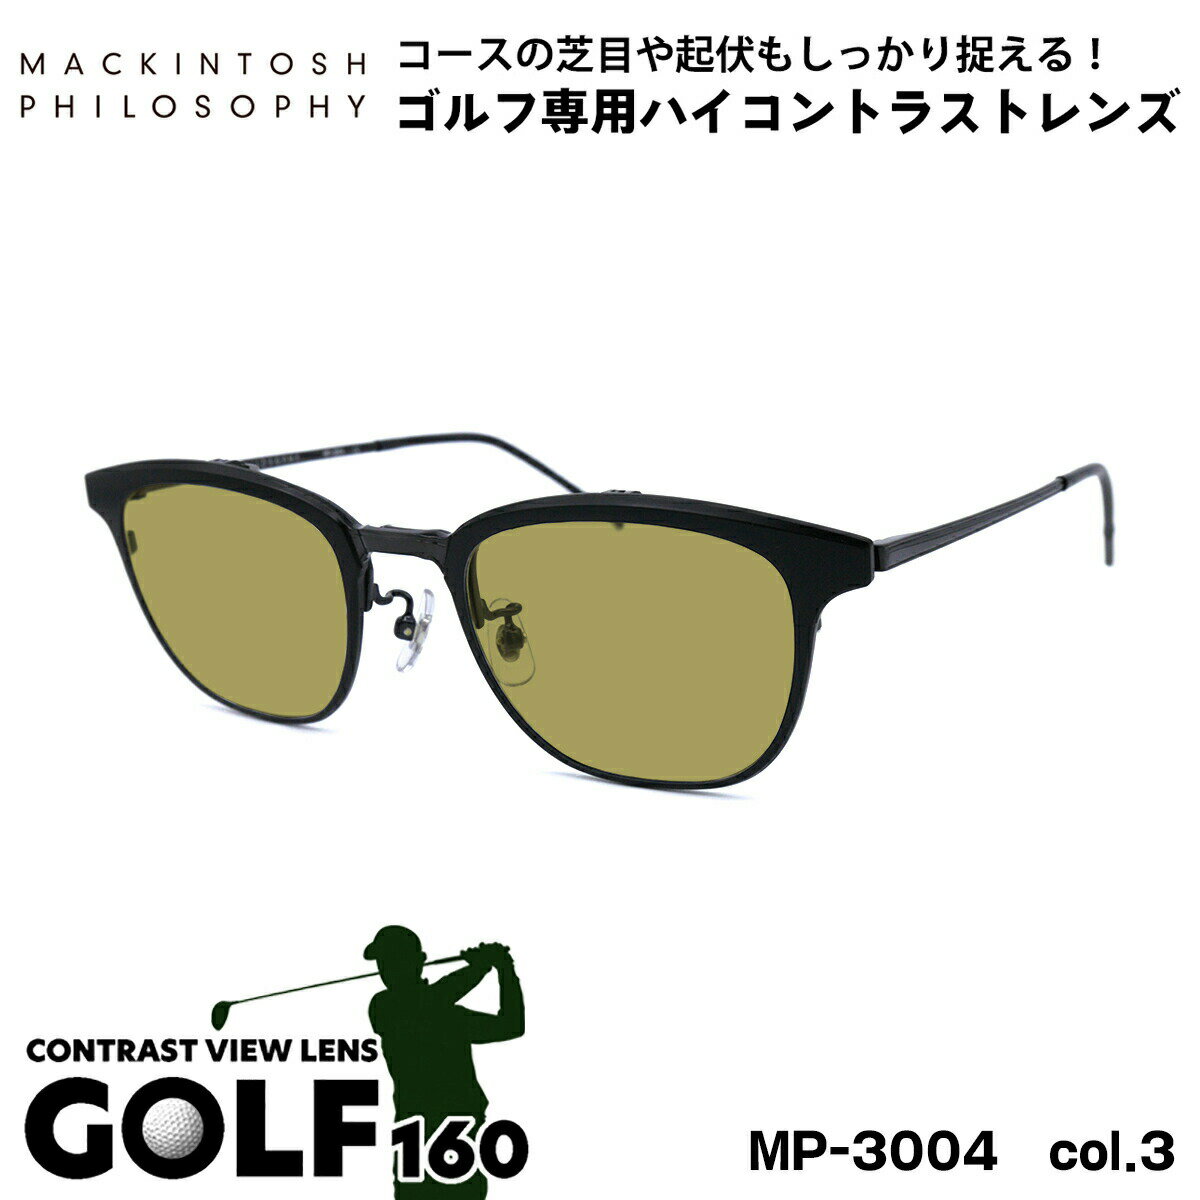 ゴルフ サングラス MP-3004 col.3 50mm 跳